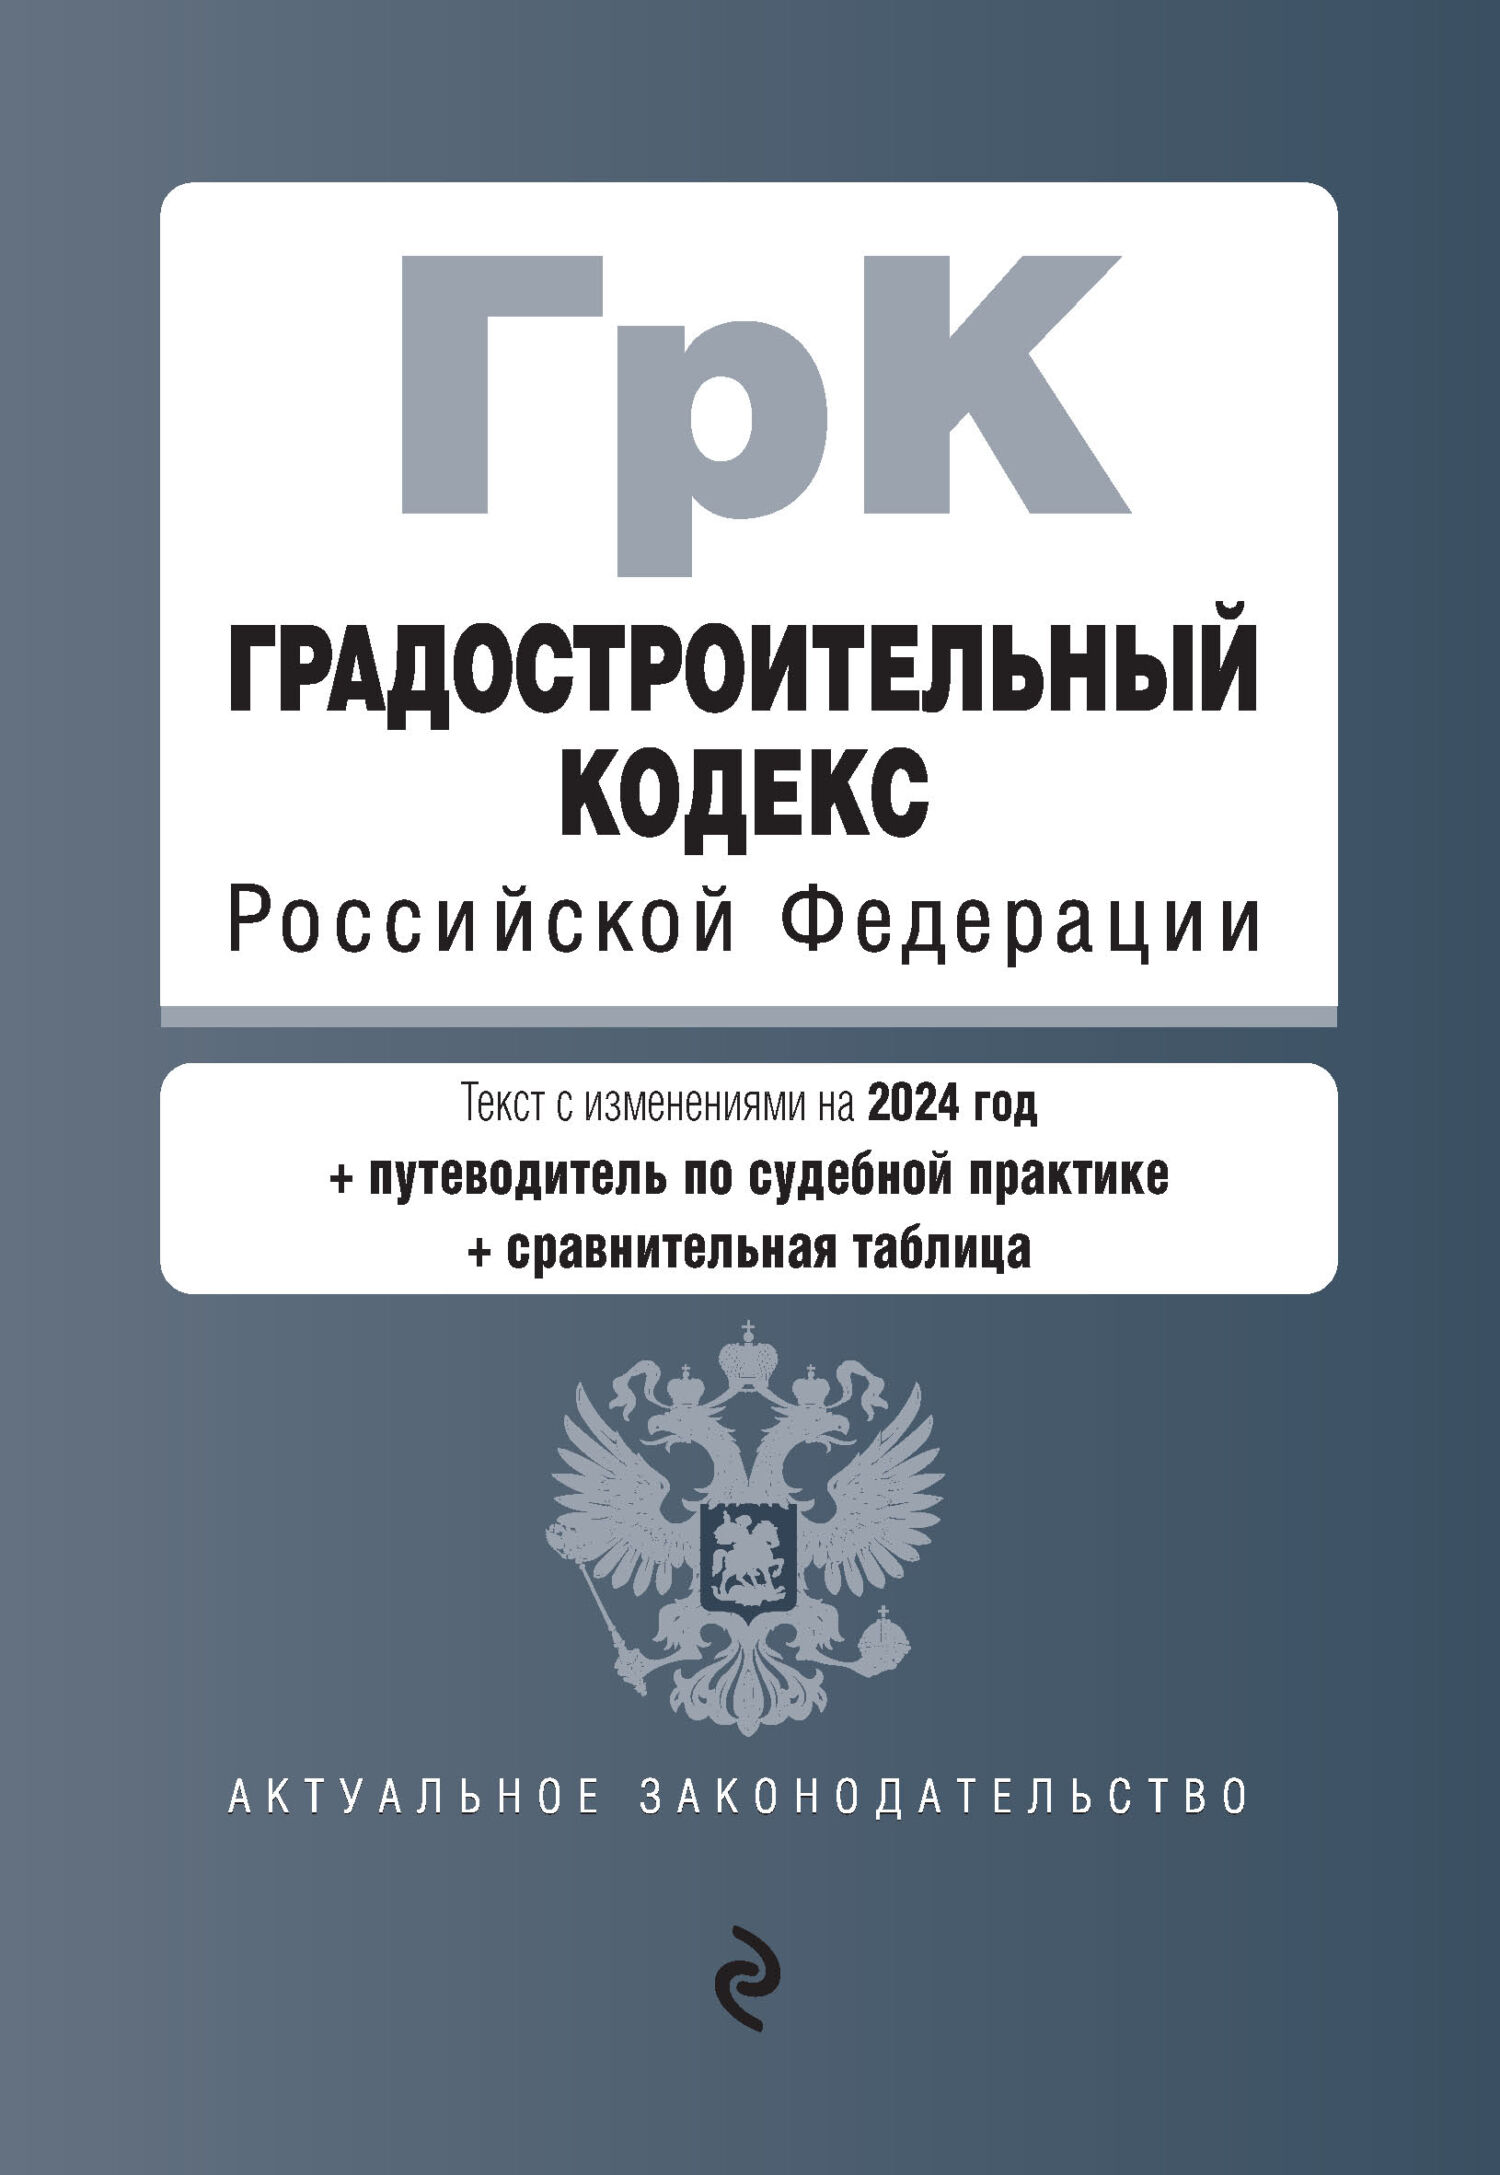 Градостроительный кодекс Российской Федерации. Текст с изменениями и дополнениями на 2018 год